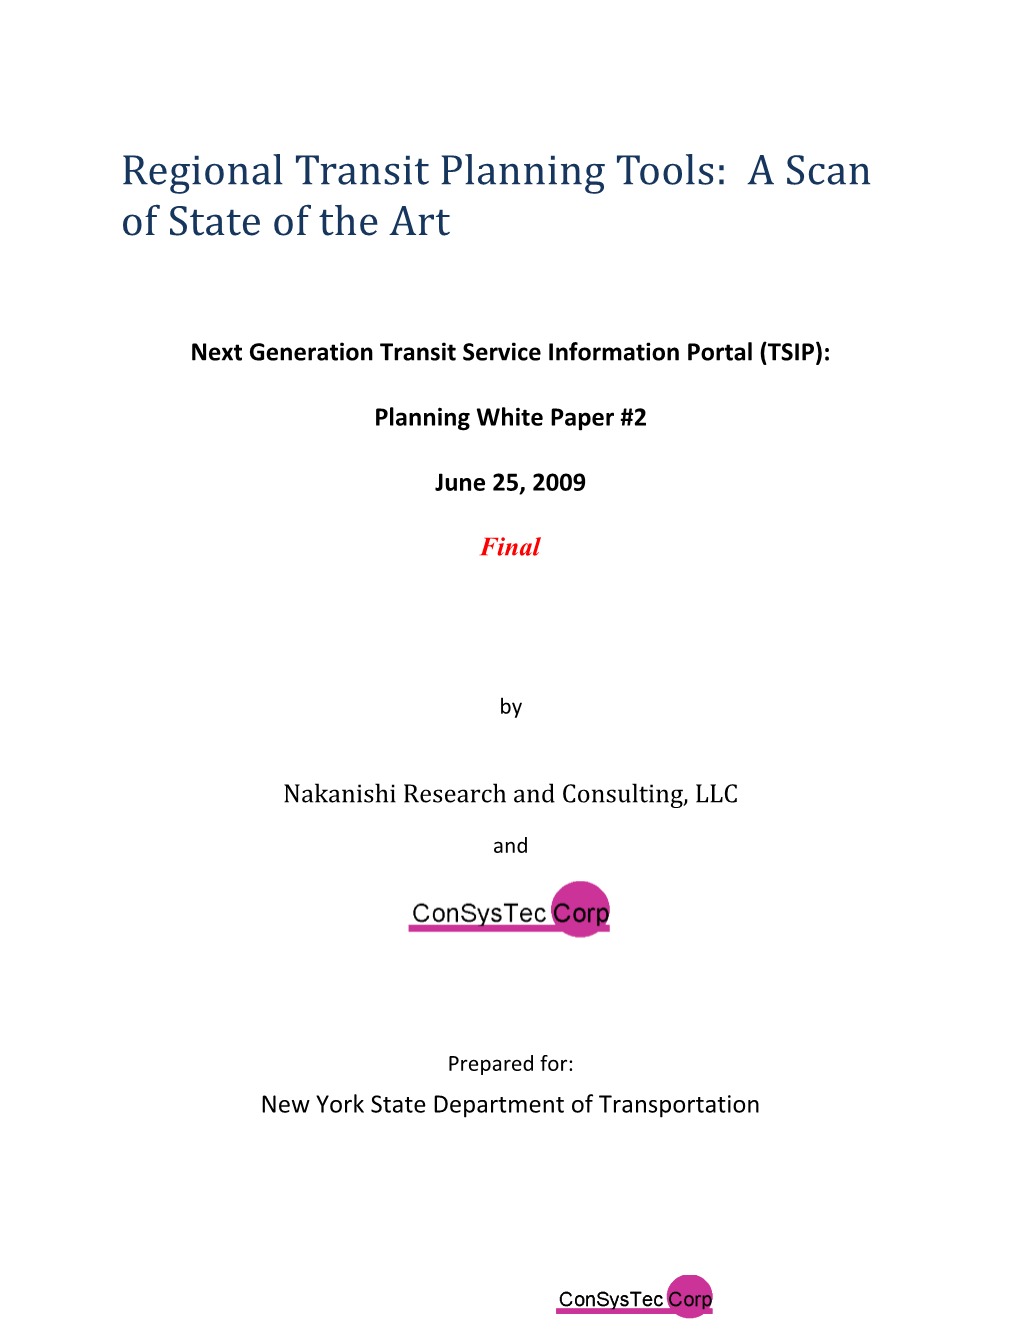 Next Generation Transit Service Information Portal (TSIP)